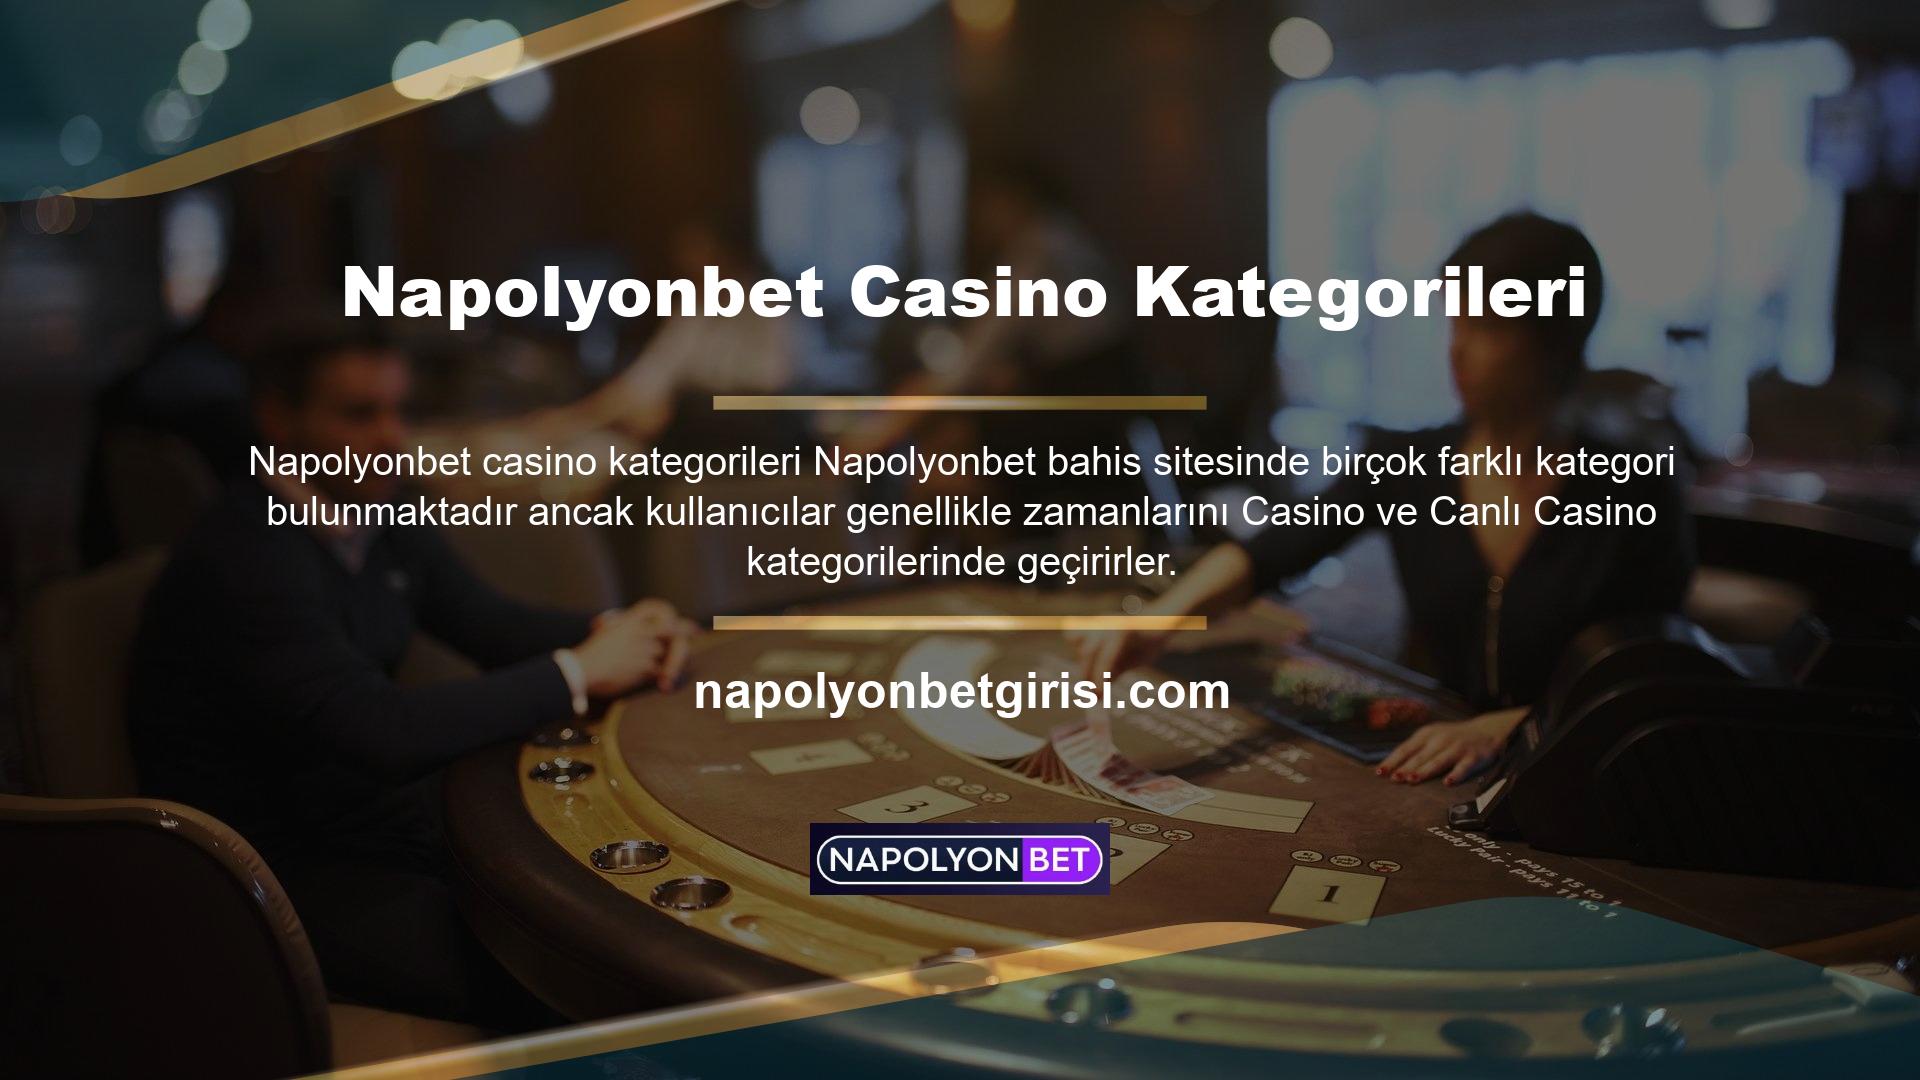 Napolyonbet Casino kategorisi, kullanıcıların çeşitli oyun seçeneklerini bulabilecekleri bir kategoridir